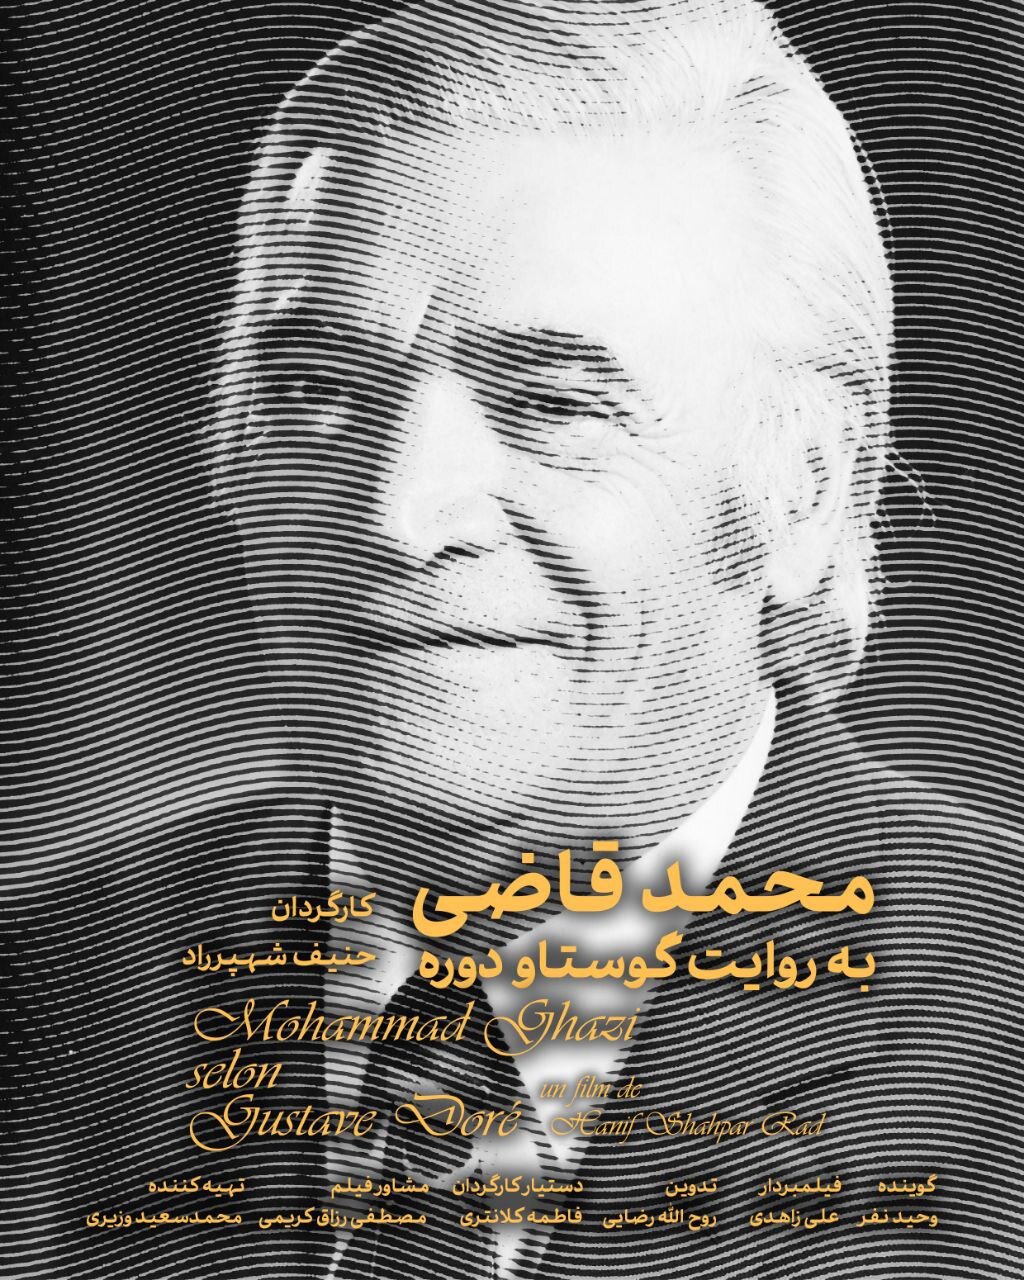 مستند «محمد قاضی به روایت گوستاو دوره» در جشنواره سینما حقیقت